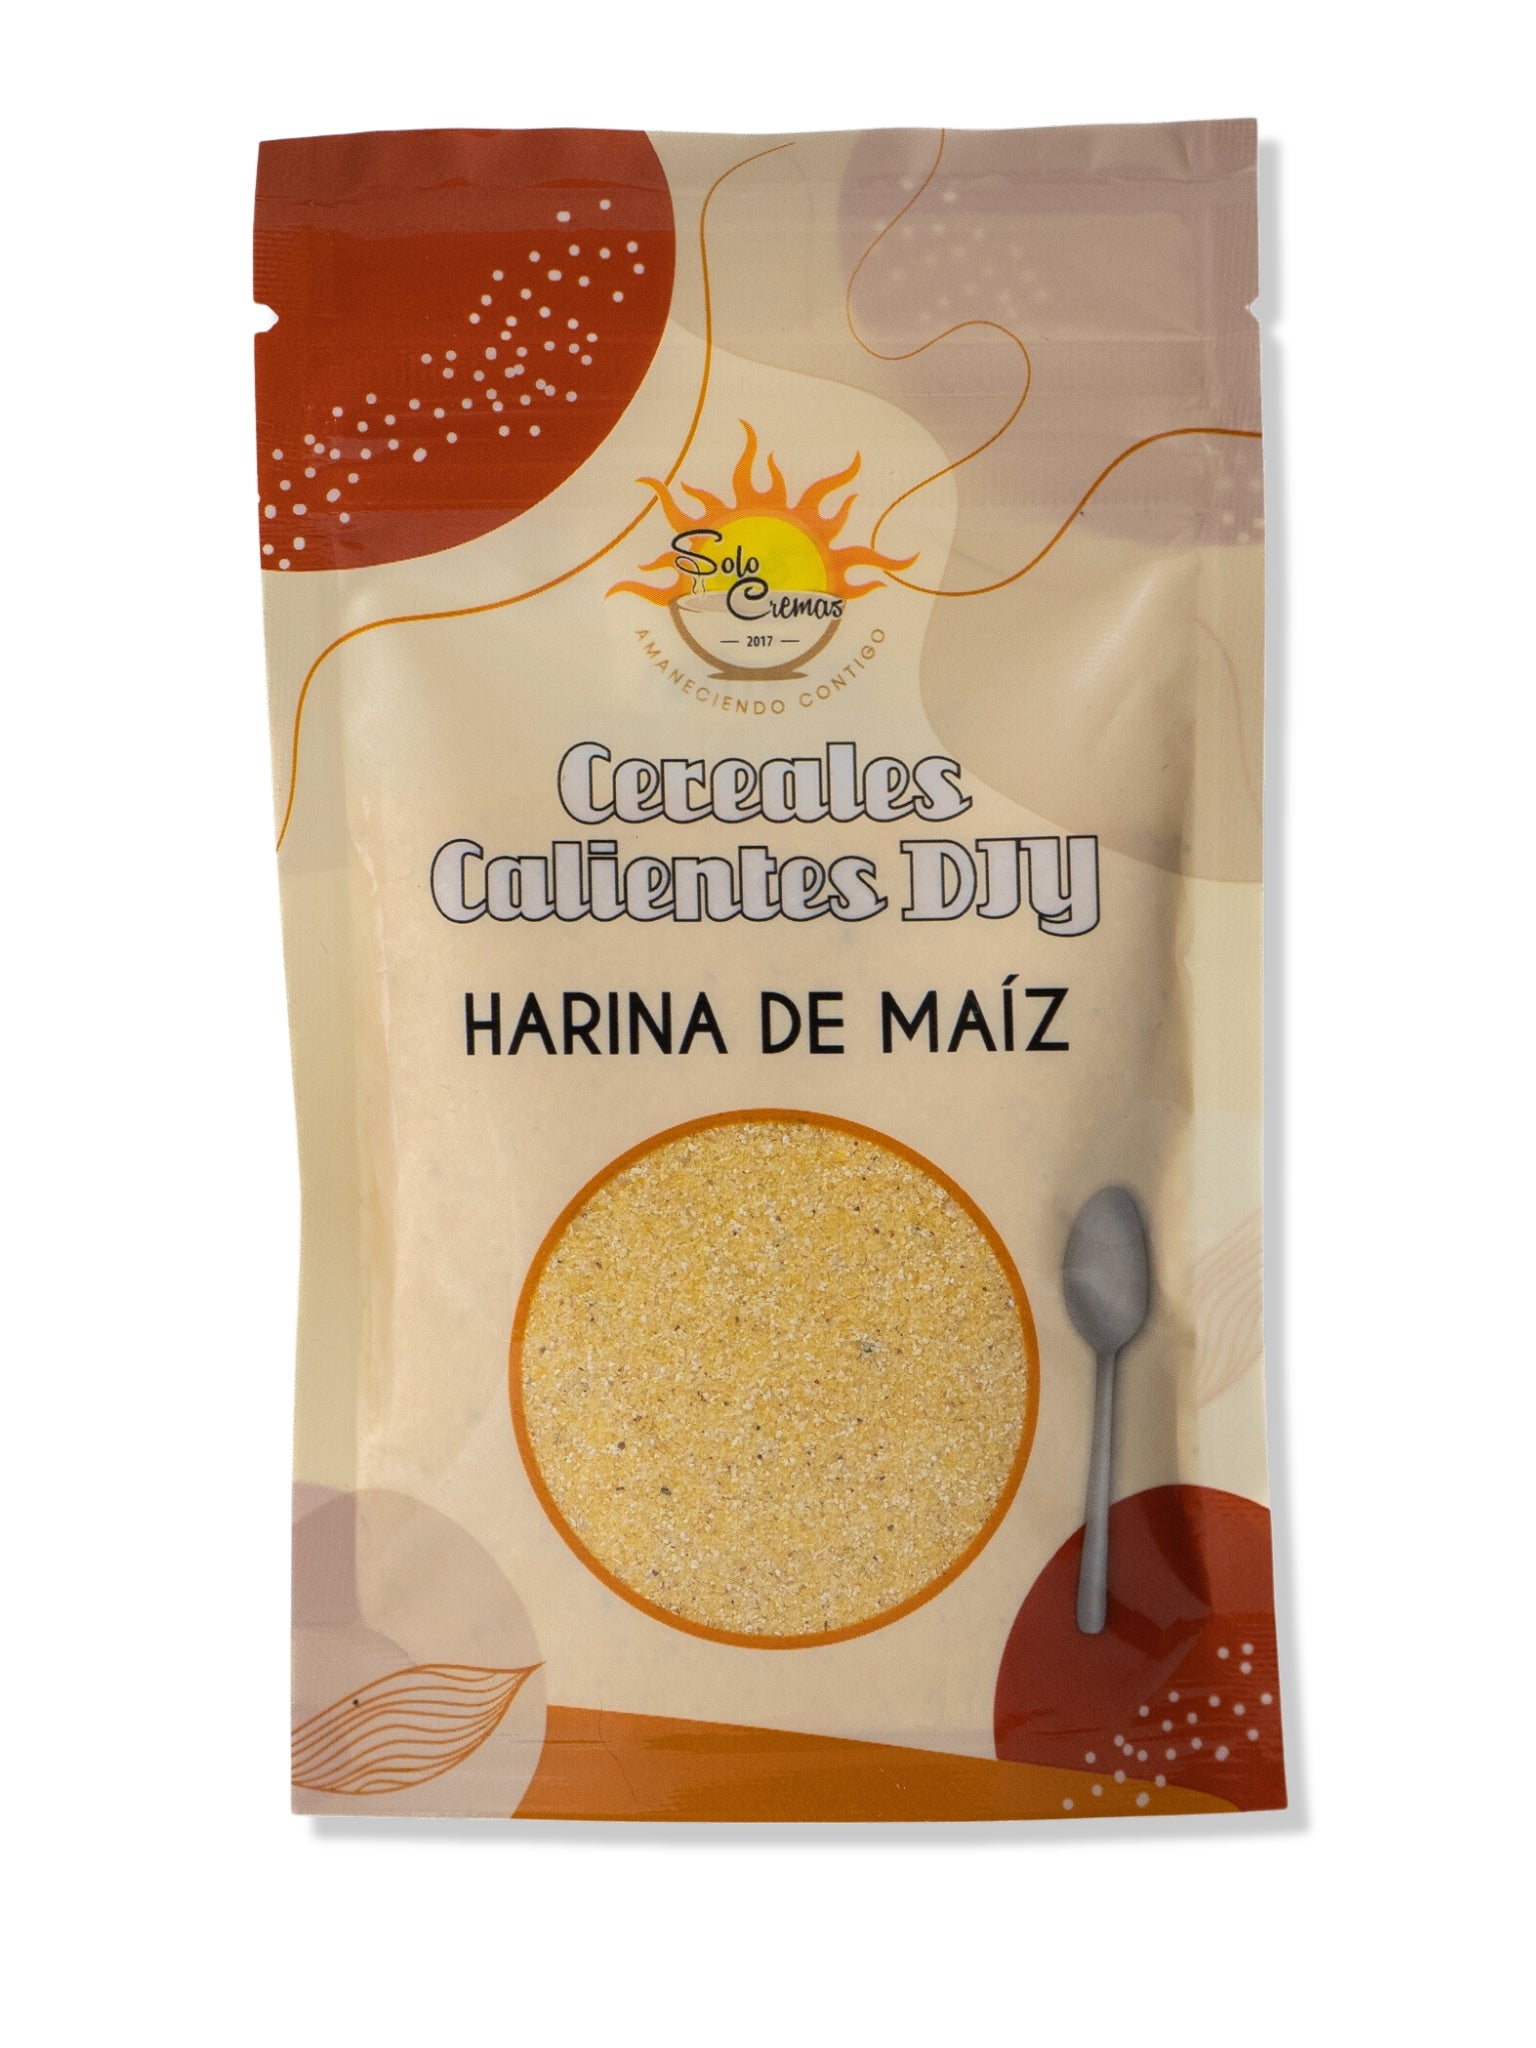 Harina De Maiz de Solo Cremas - Cereales Calientes DIY